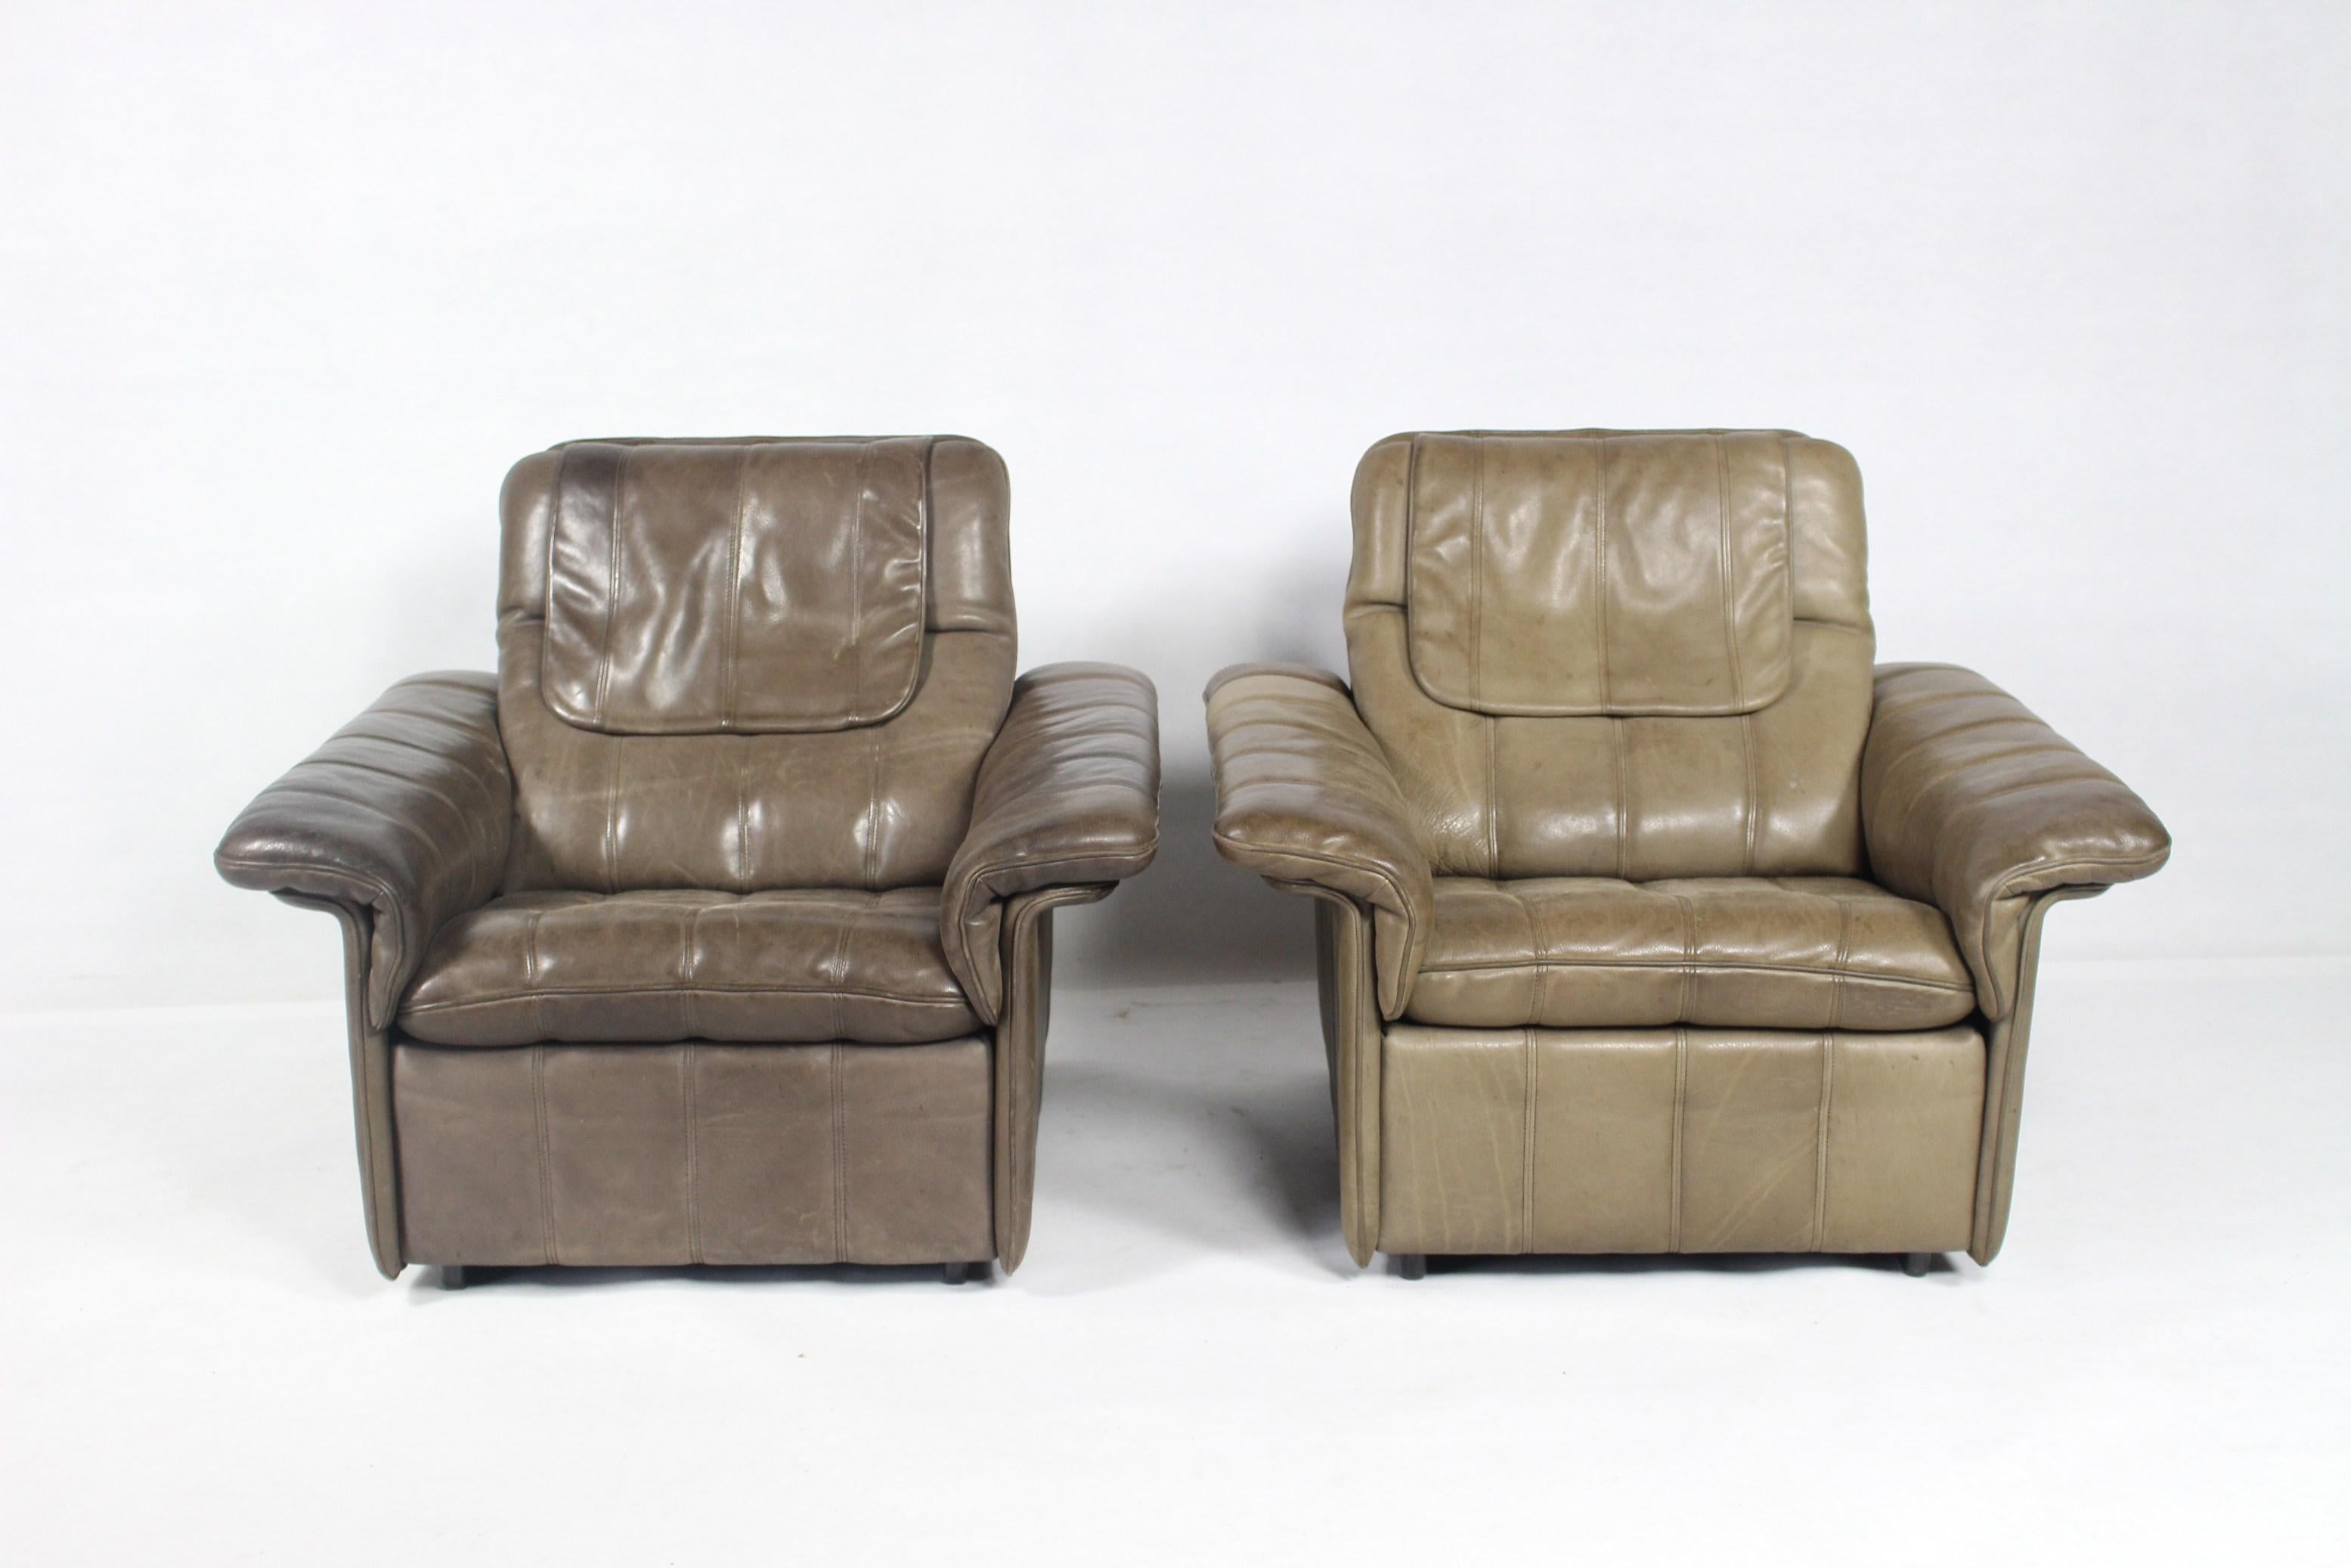 De Sede Büffelleder, Schweiz, 1970er Jahre.
Braunes dickes Nackenleder mit hellen Nähten.
Zustand Vintage By.
Preis für 1 Stuhl verfügbar 2 Stühle.